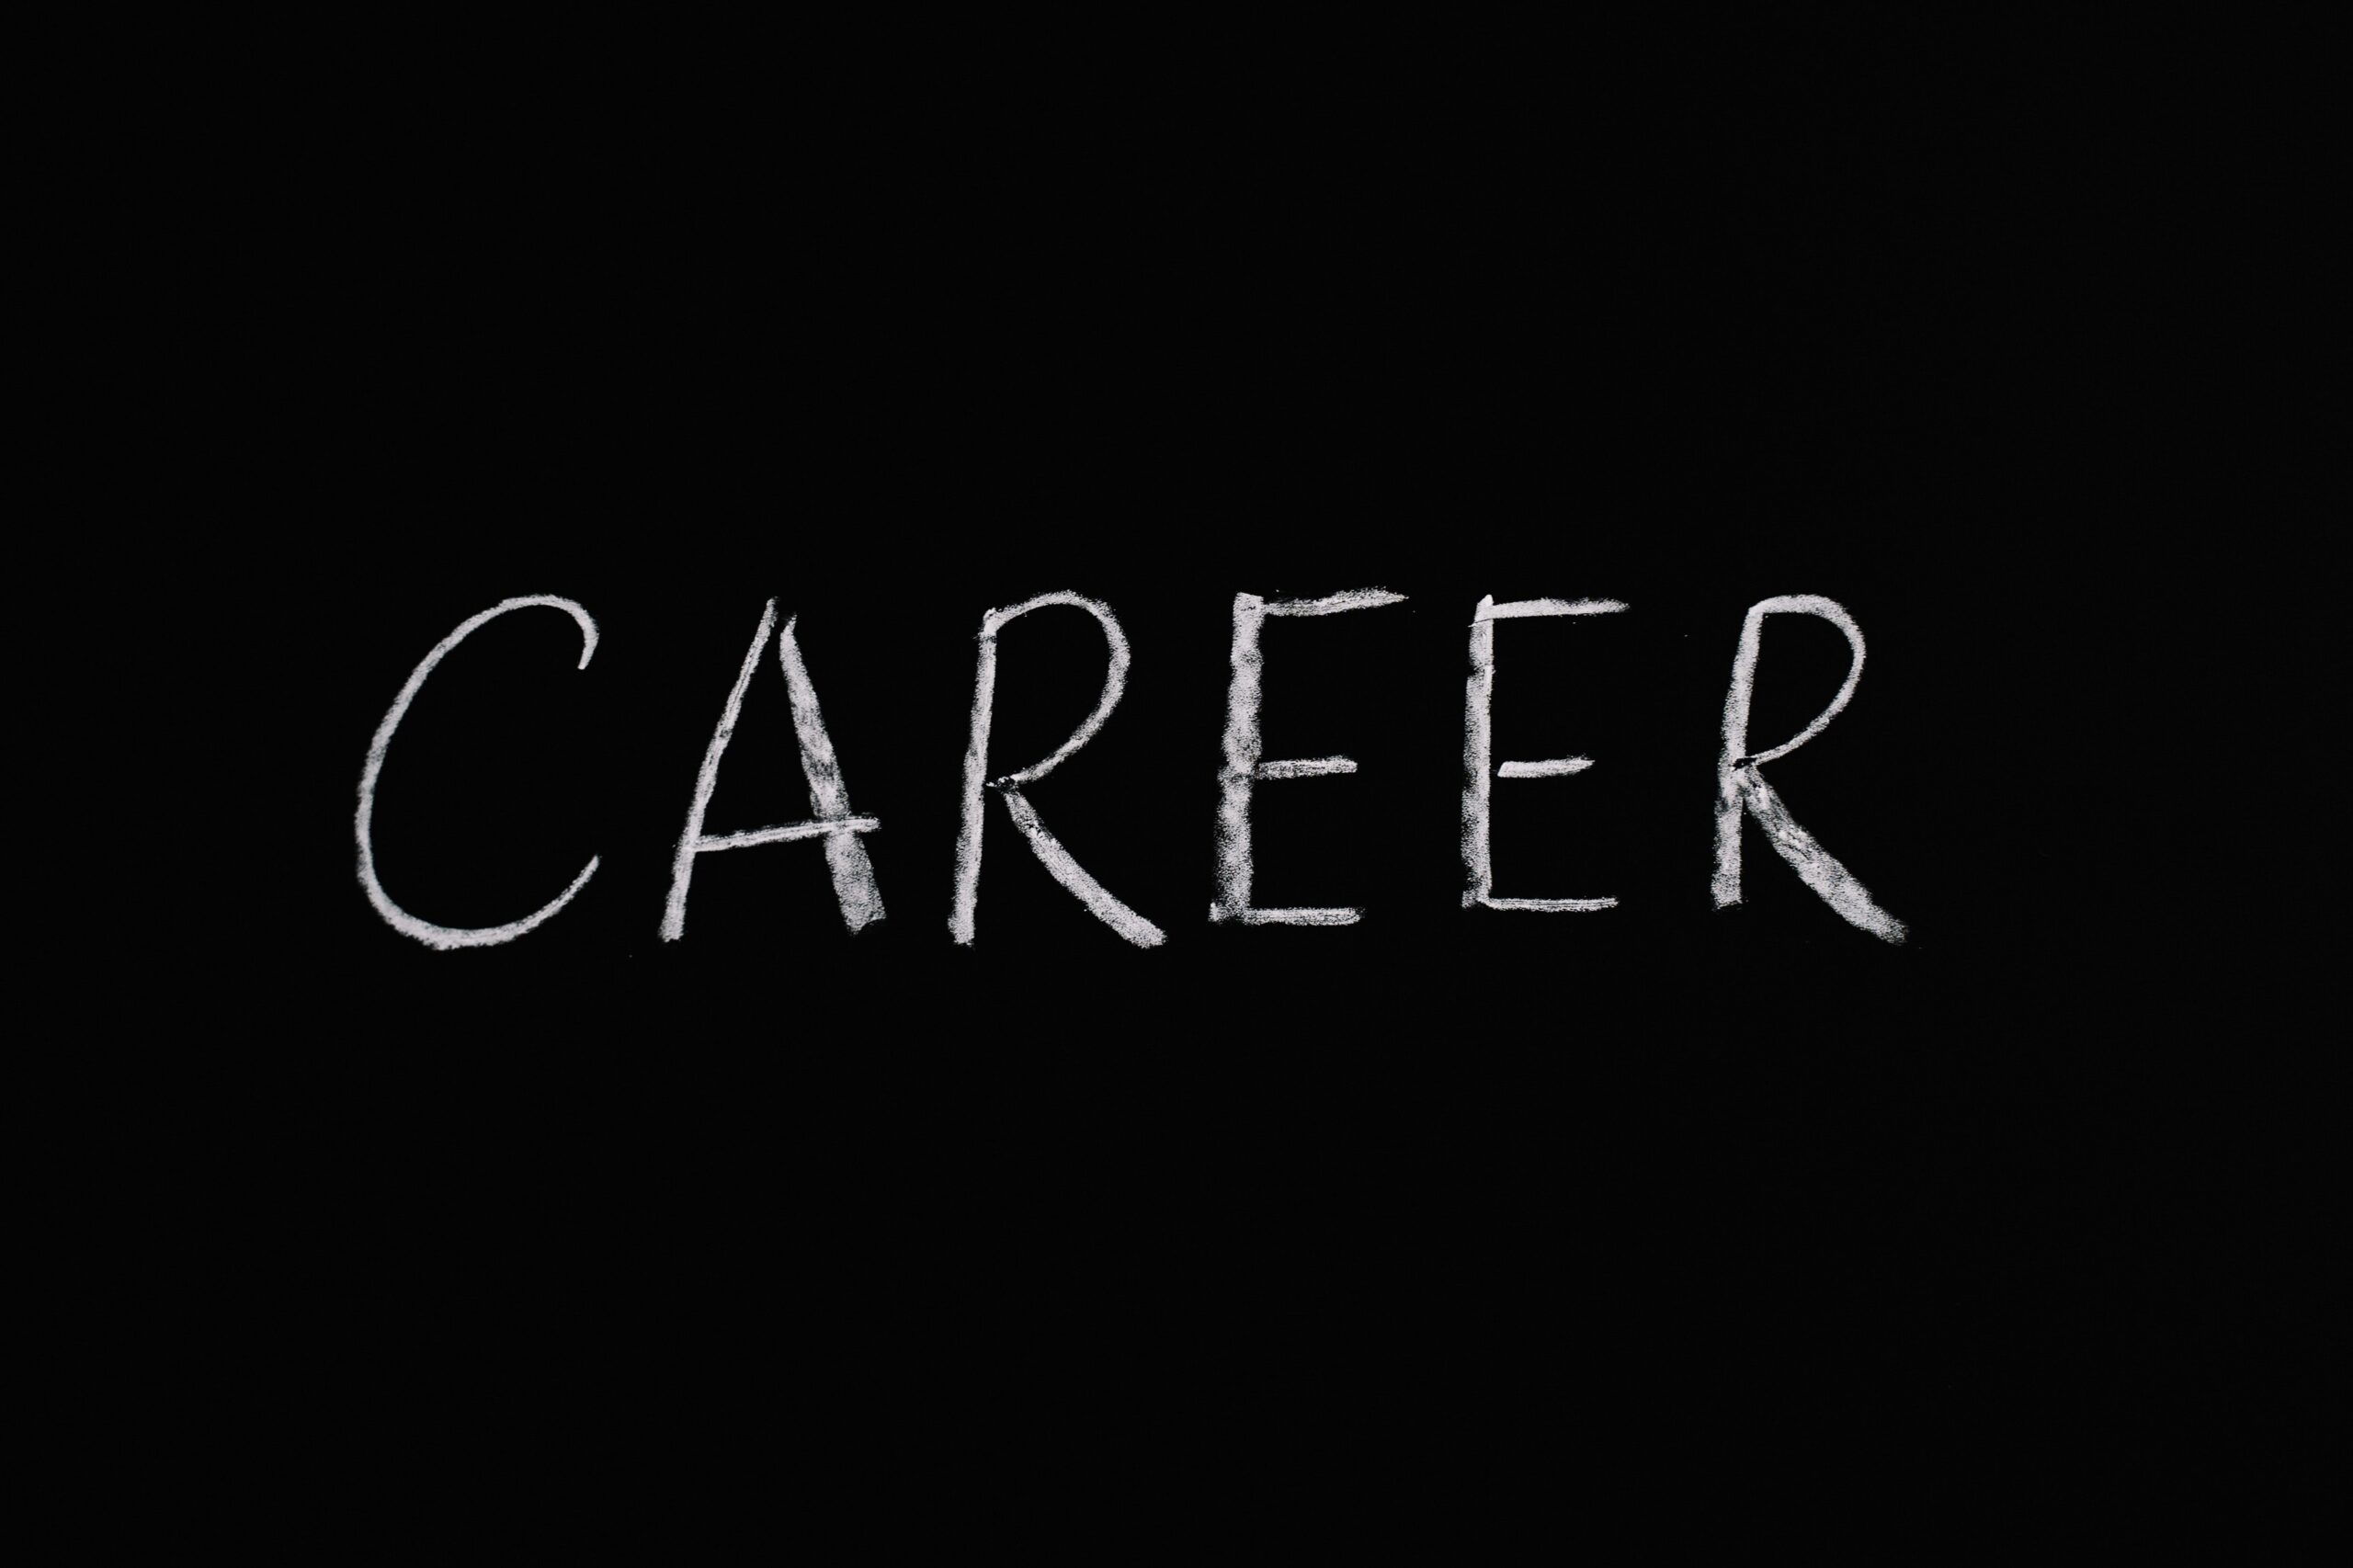 The word "CAREER" is written in chalk on a black chalkboard.